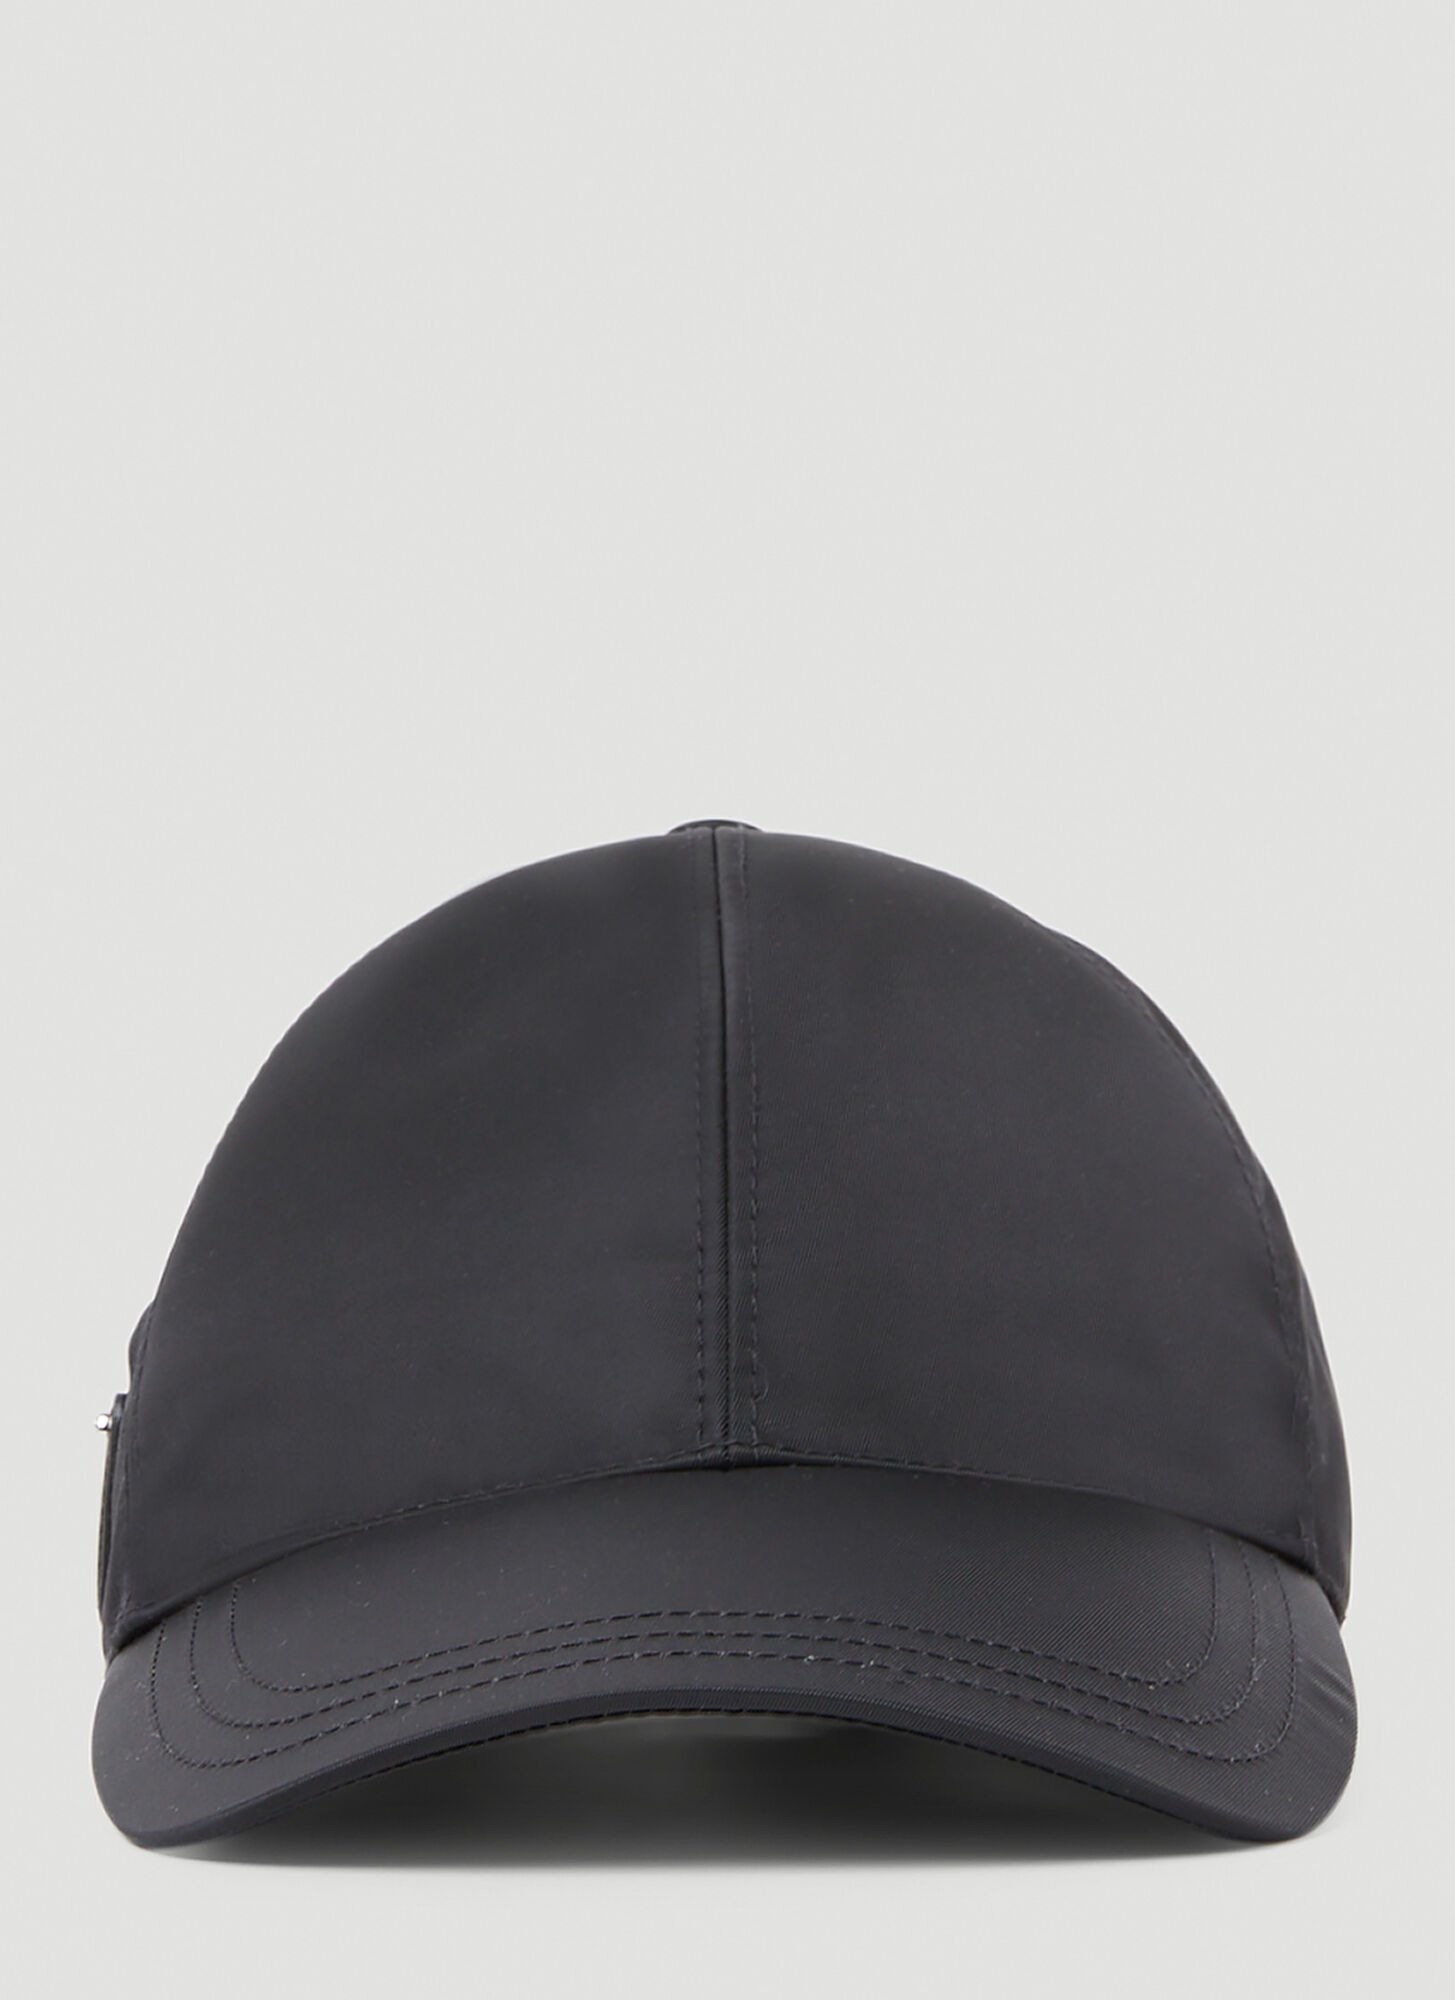 Prada Re-nylon Baseball Cap In Black